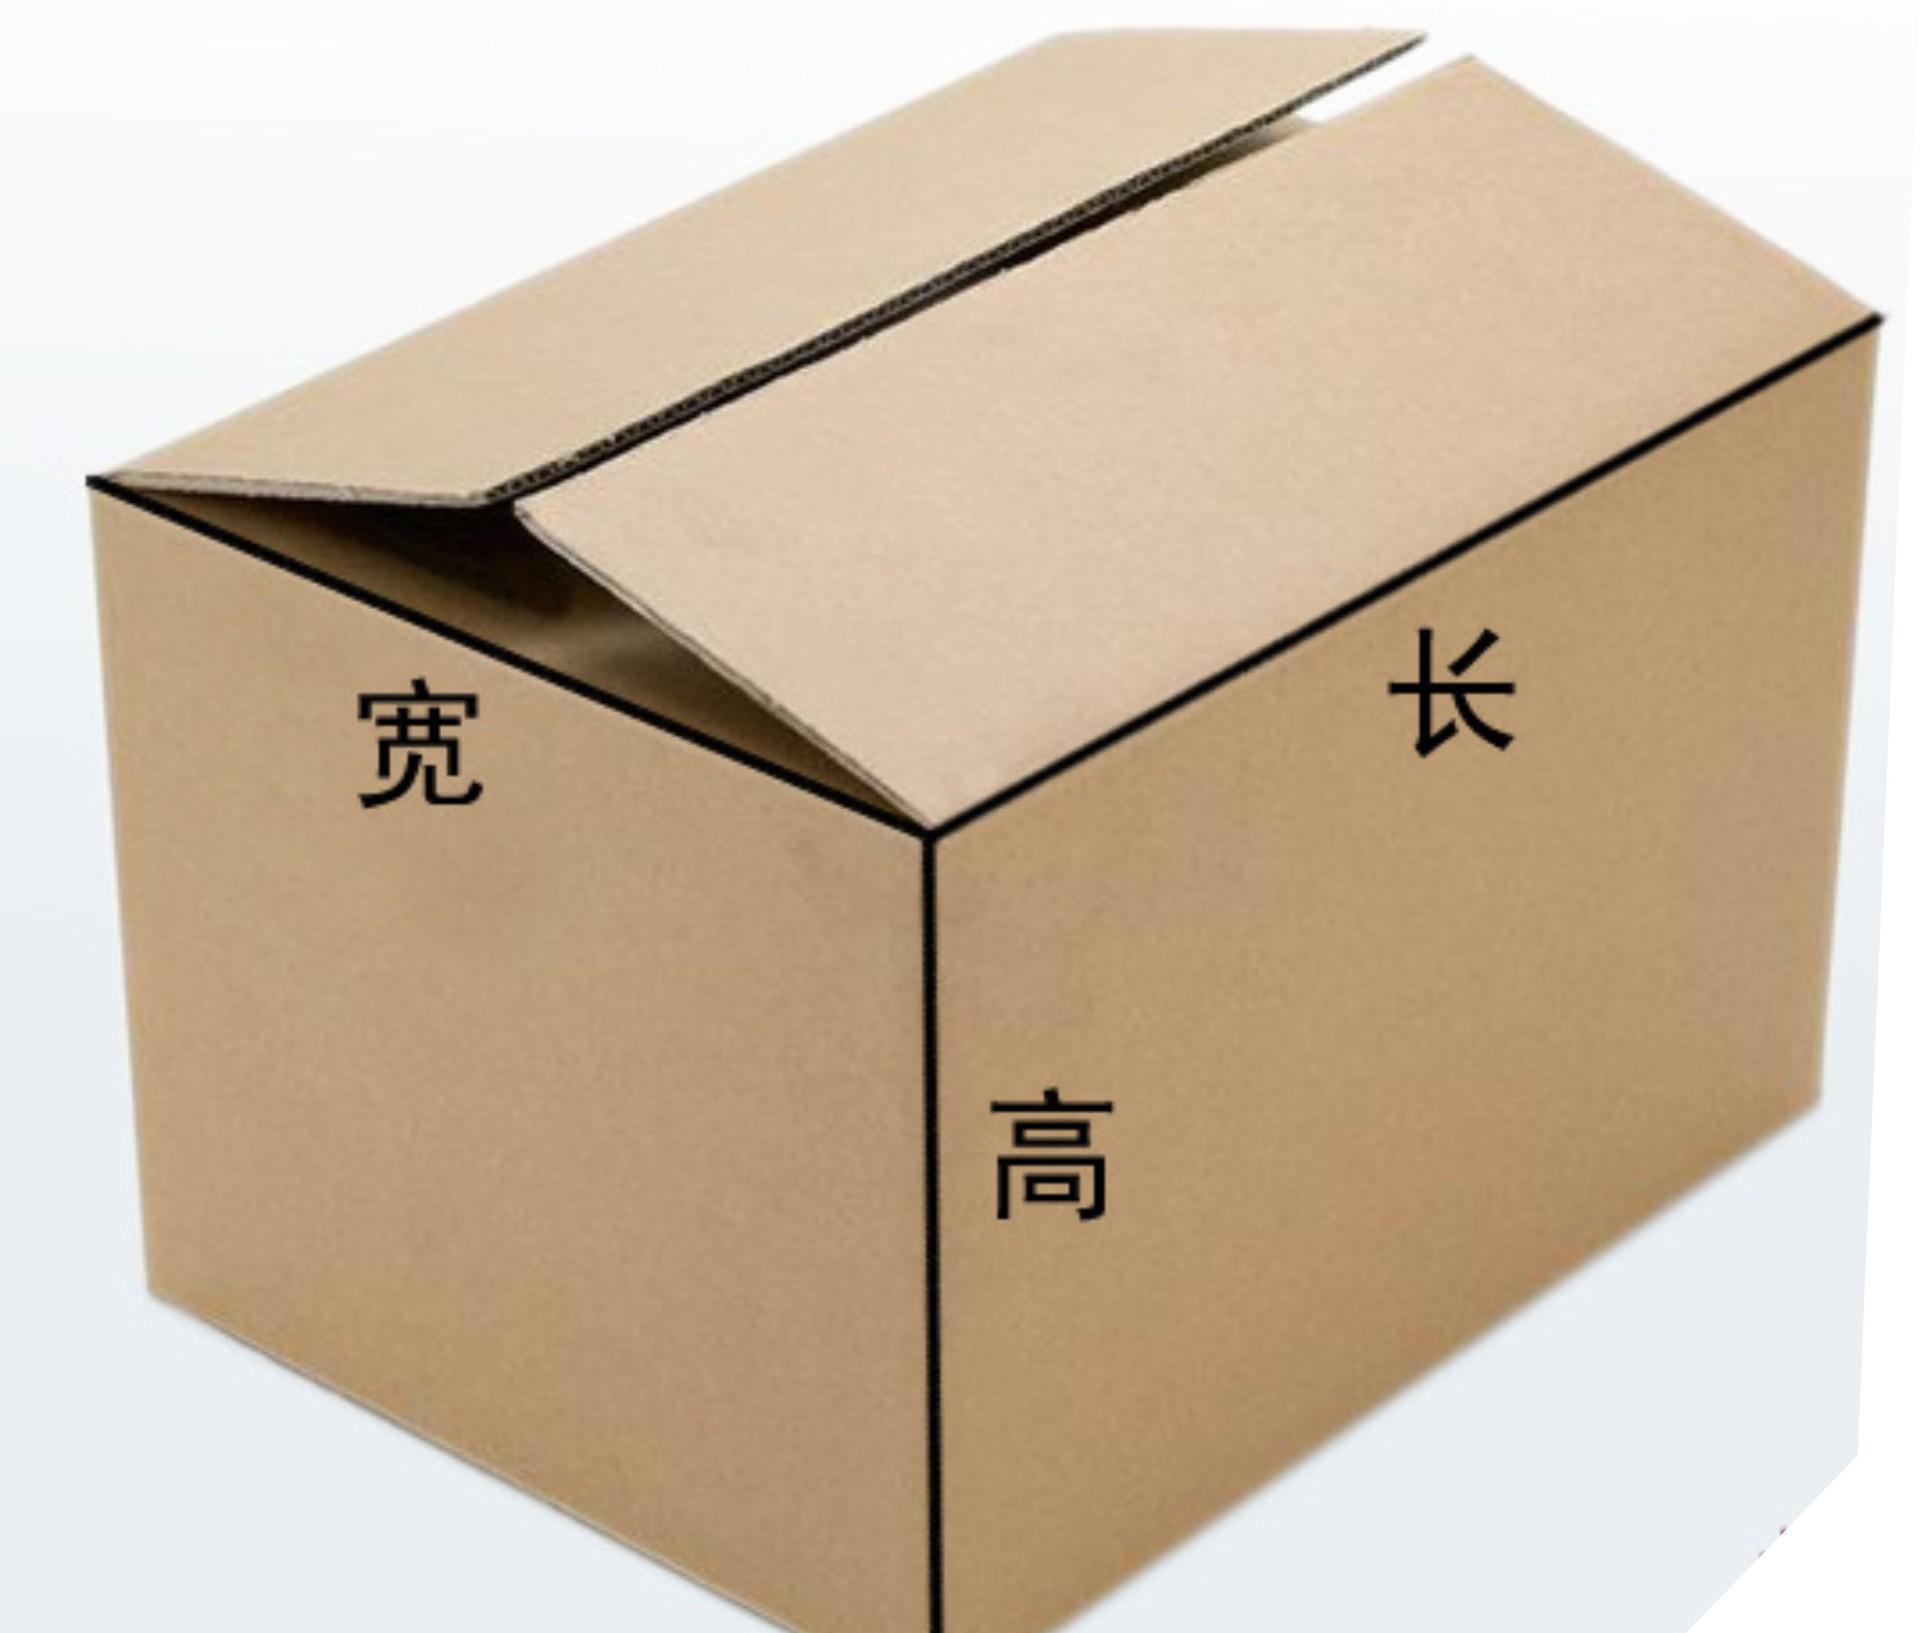 适度包装 定制飞机盒定做 快递盒子服装纸盒批发现货纸箱印刷纸